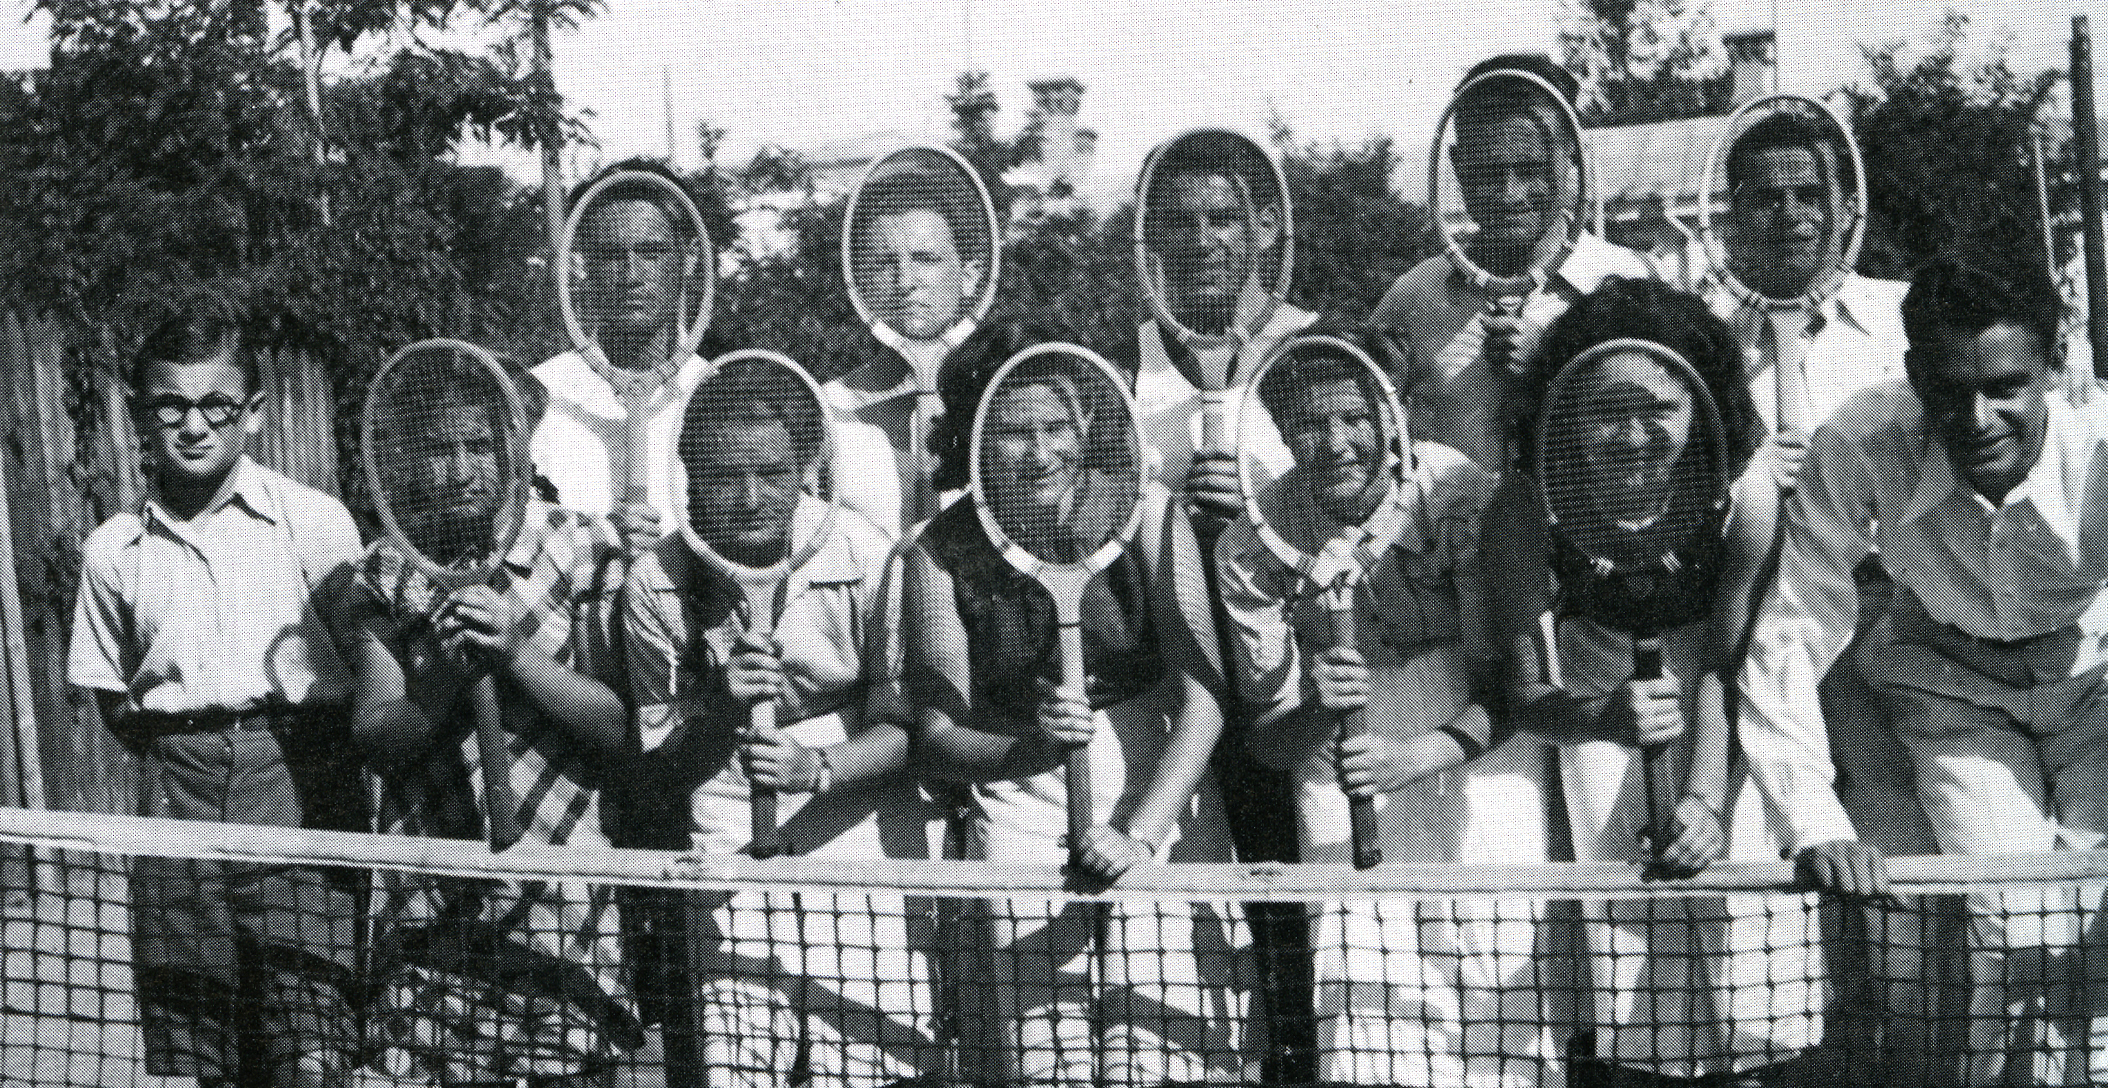 Бельцы, 1939. Еврейская молодежь на городском теннисном корте